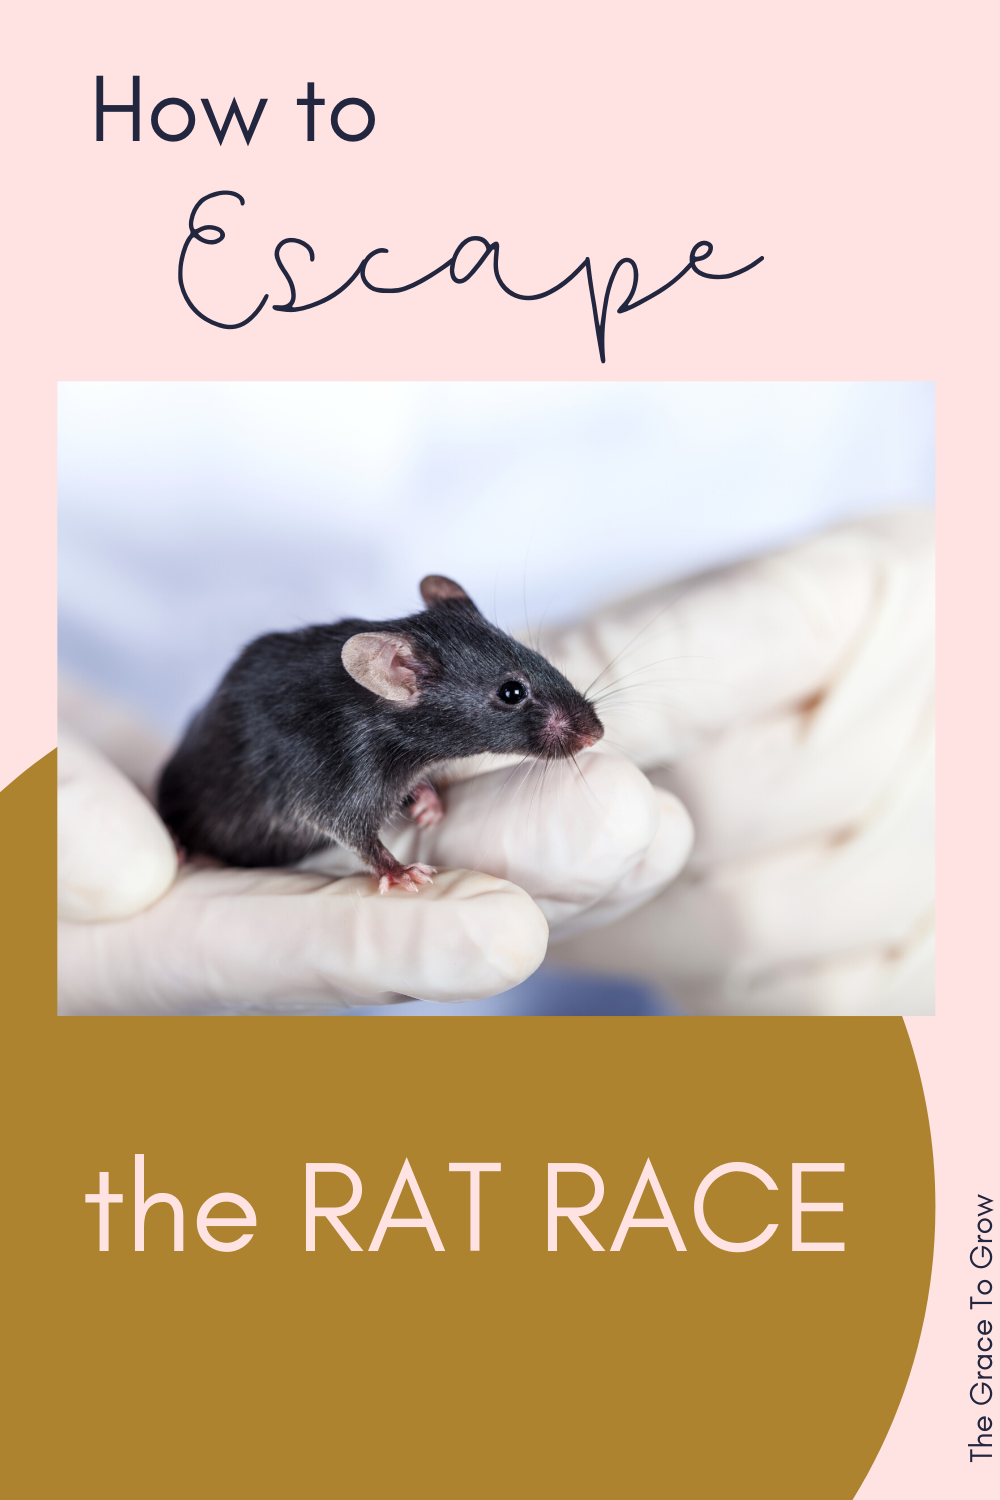 how-to-escape-the-rat-race-pinterest-image